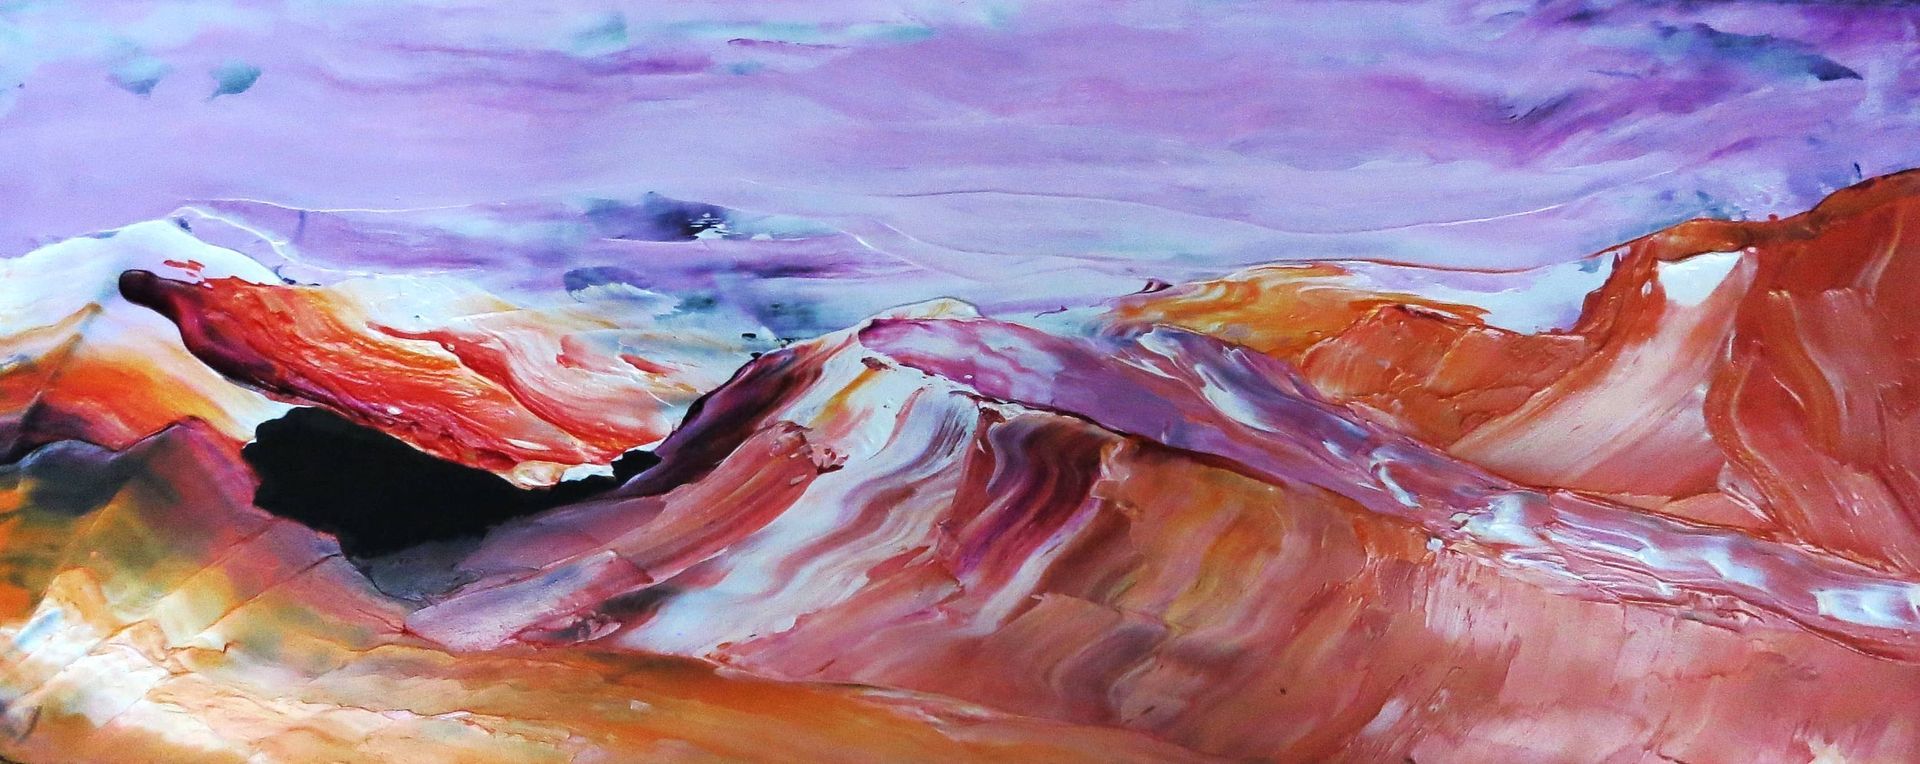 Fire Mountain est une huile sur masonite de 11 po x 4 po. À ma troisième collection, je commençais à interpréter des paysages et à utiliser des couleurs vibrantes. Les riches oranges, rouges et violets ont donné vie et structure à la chaîne de montagnes.